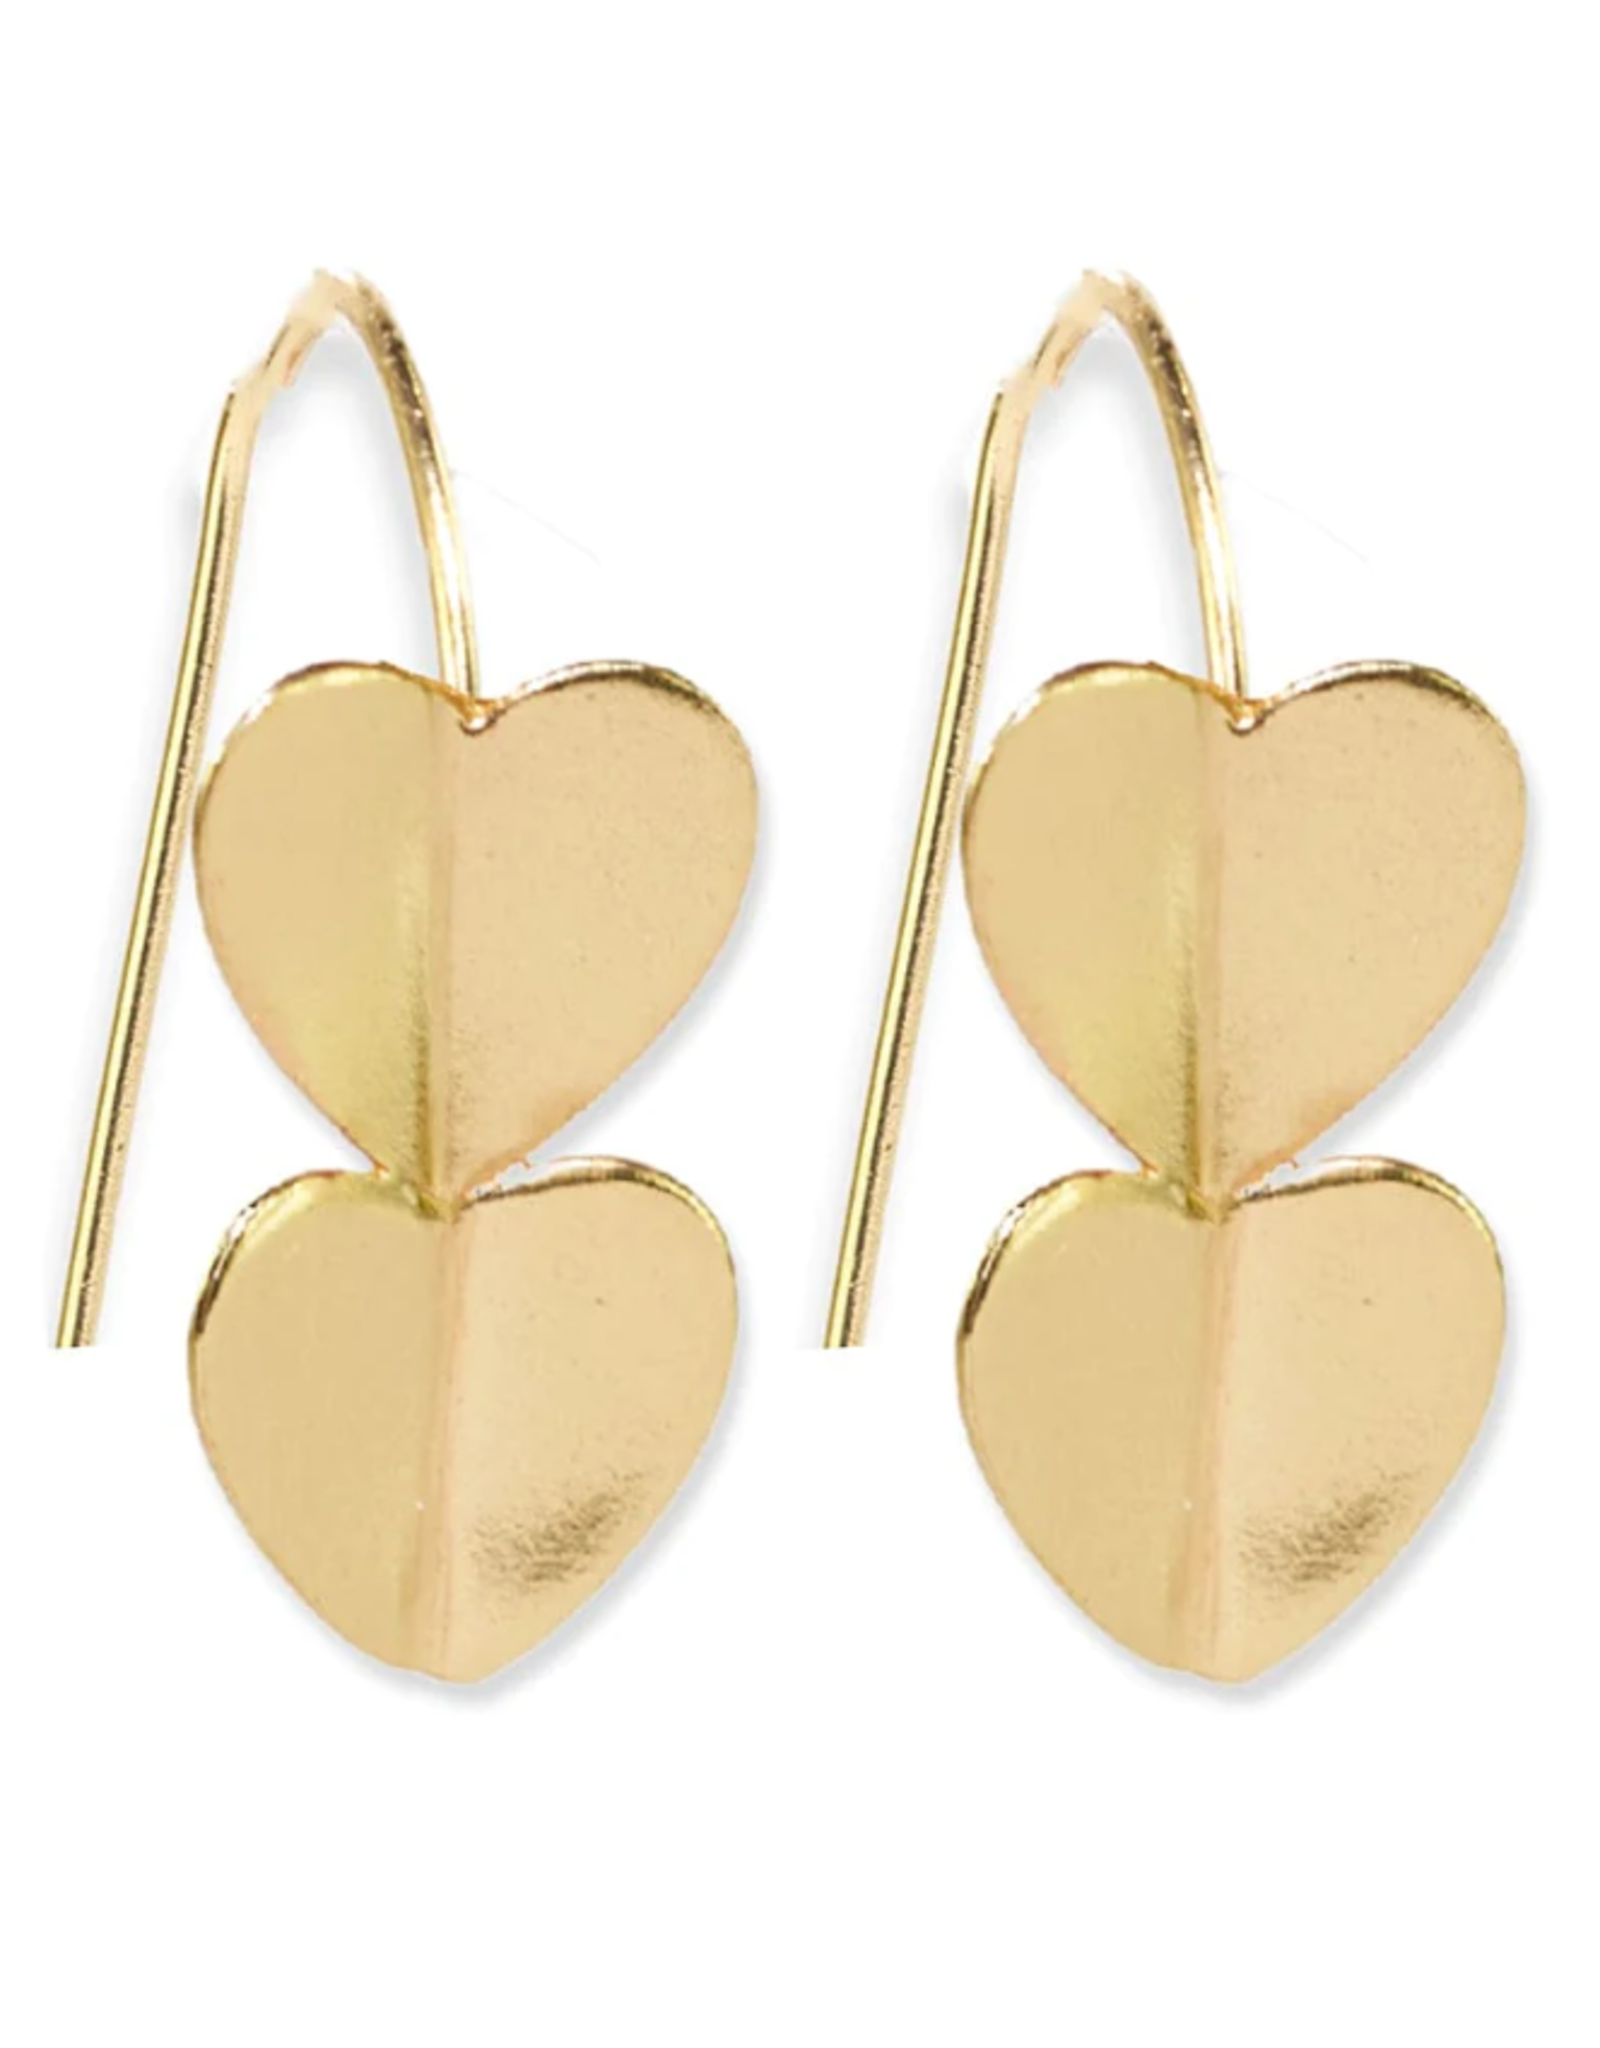 Ink + Alloy Earrings - Brass: Gretchen/Threader, Double Heart